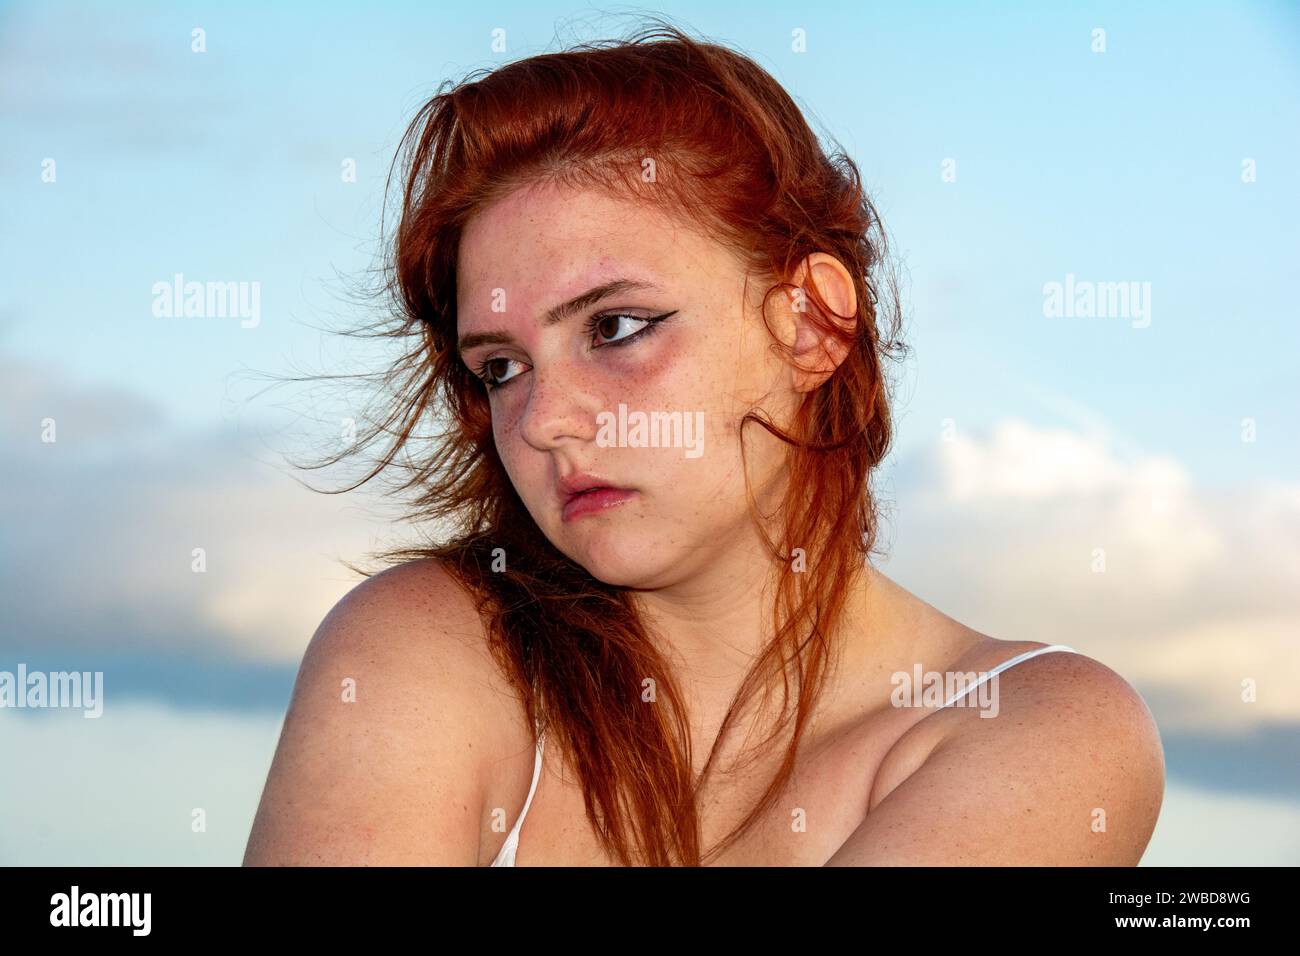 Portrait d'une jeune fille aux cheveux roux, ciel bleu et nuages, cheveux touffus par le vent Banque D'Images